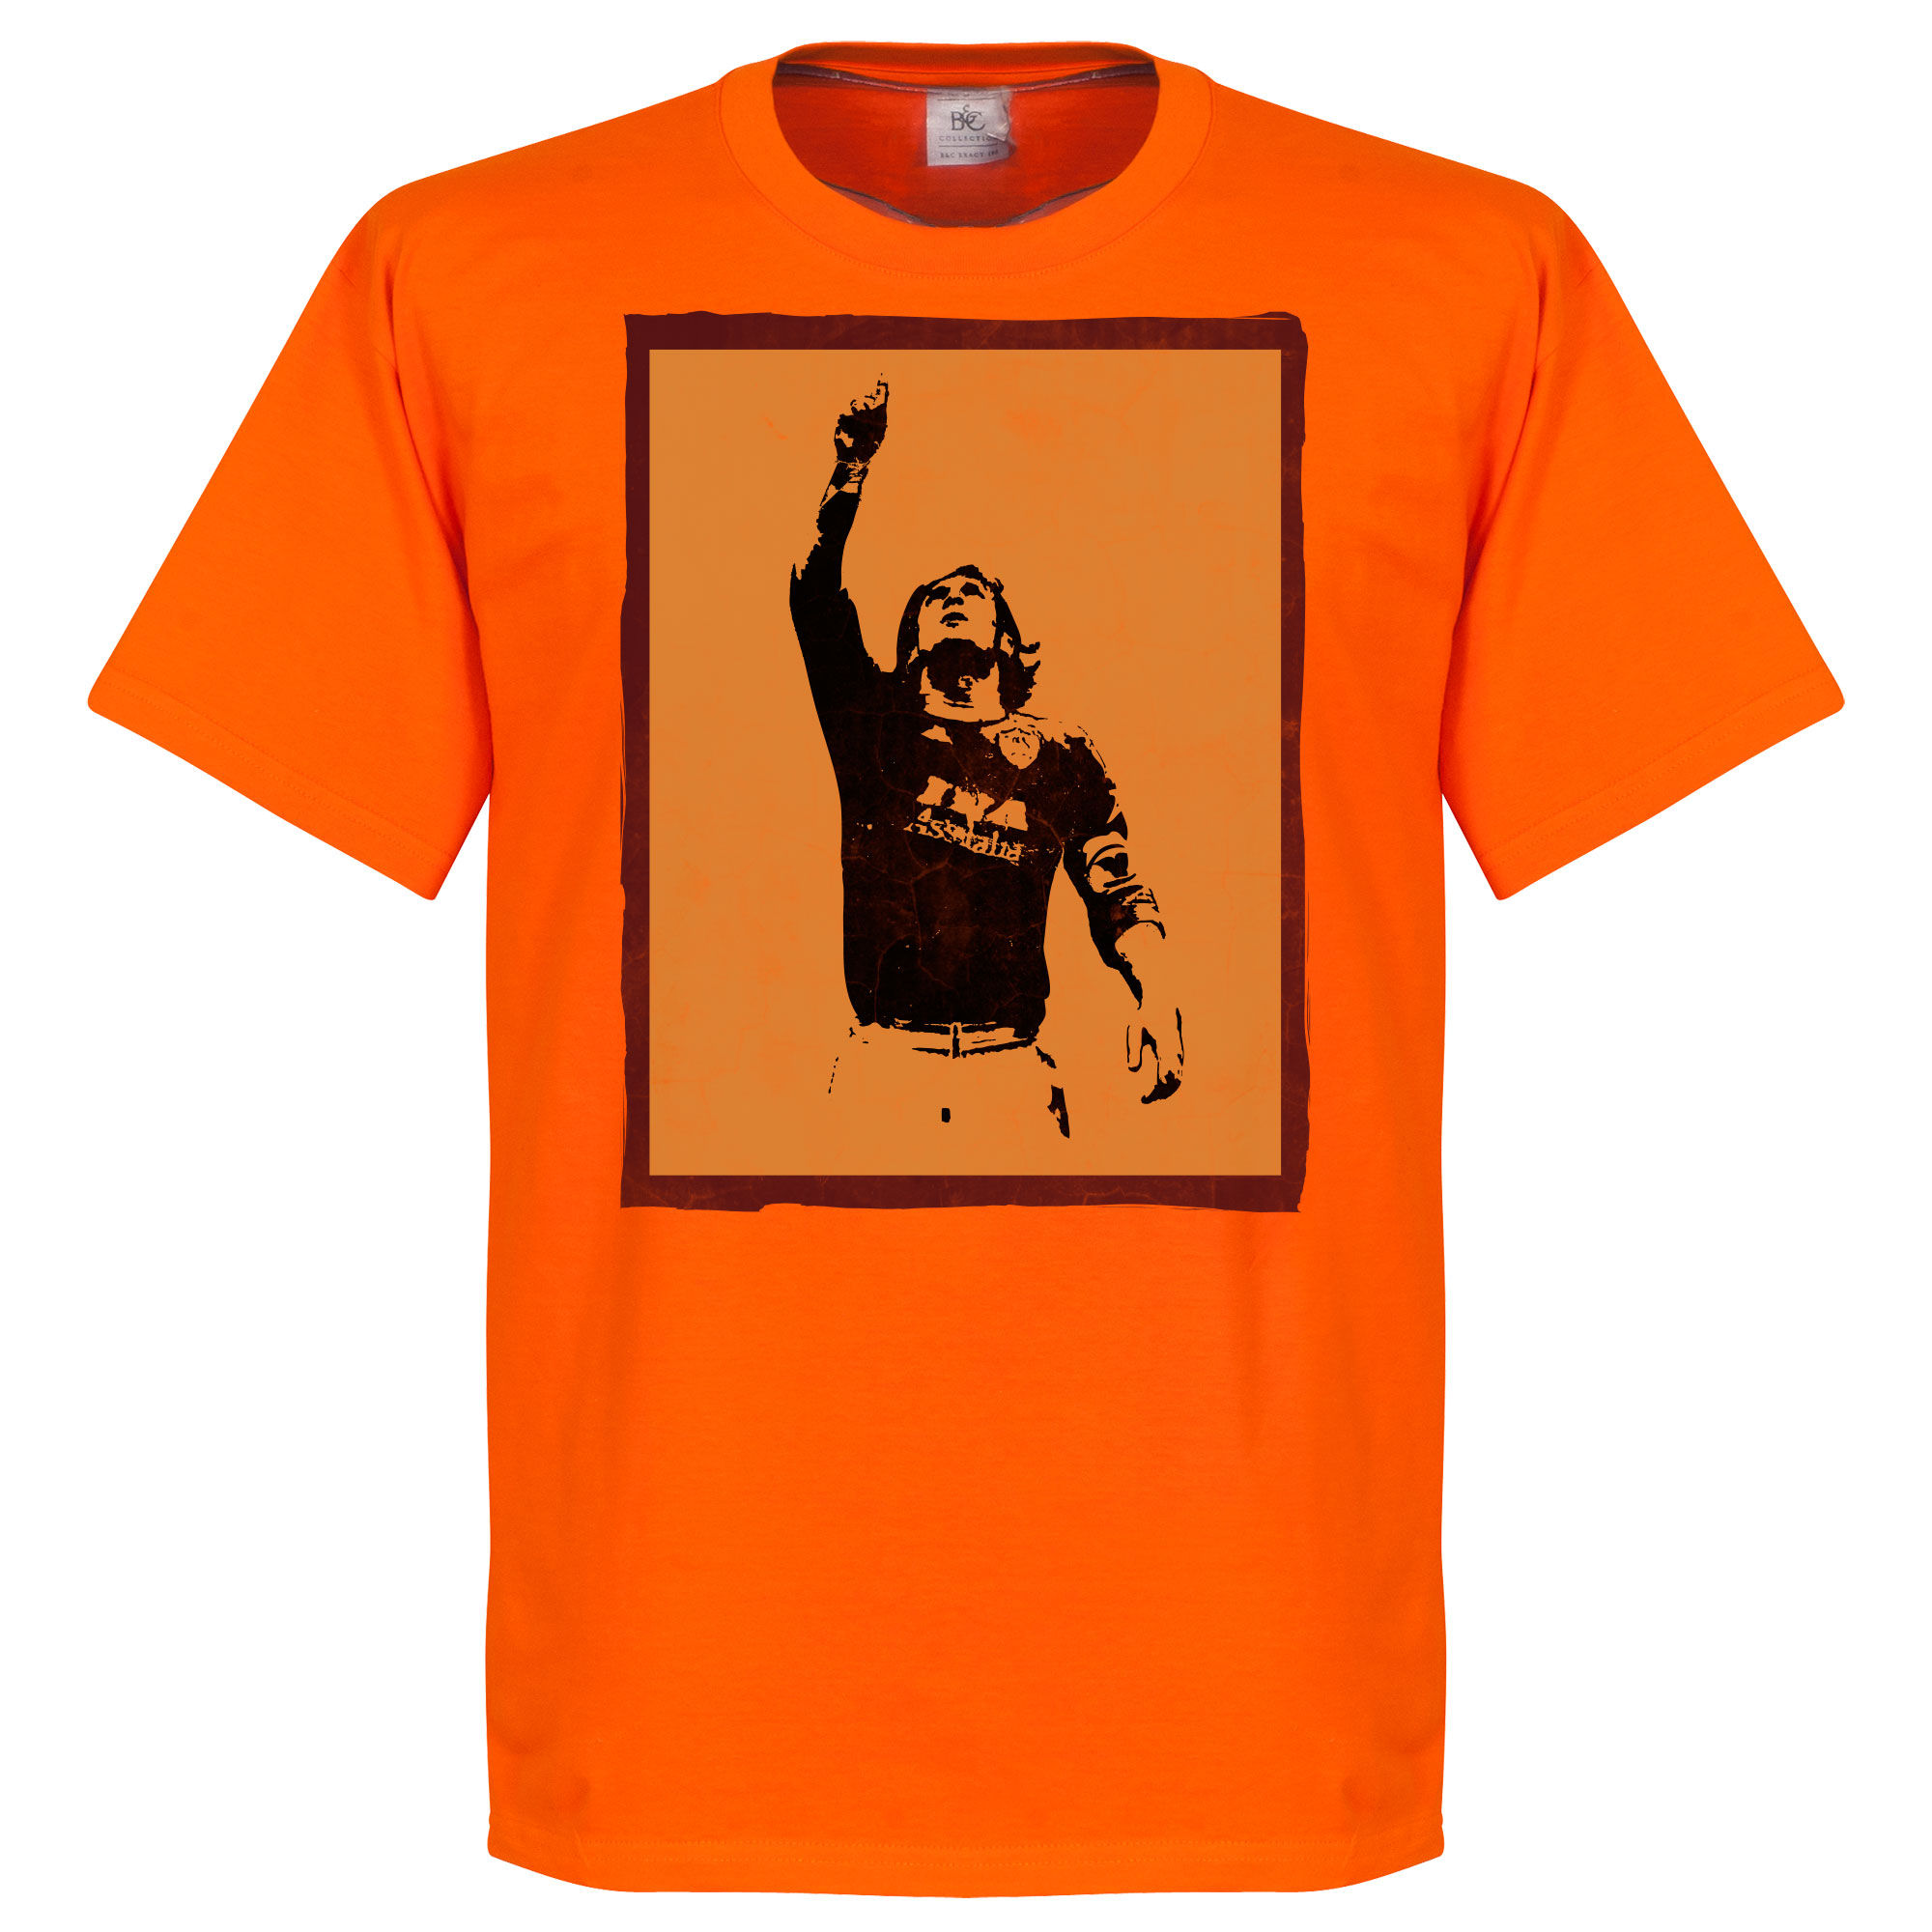 AS Řím - Tričko "Silhouette" - oranžové, Francesco Totti